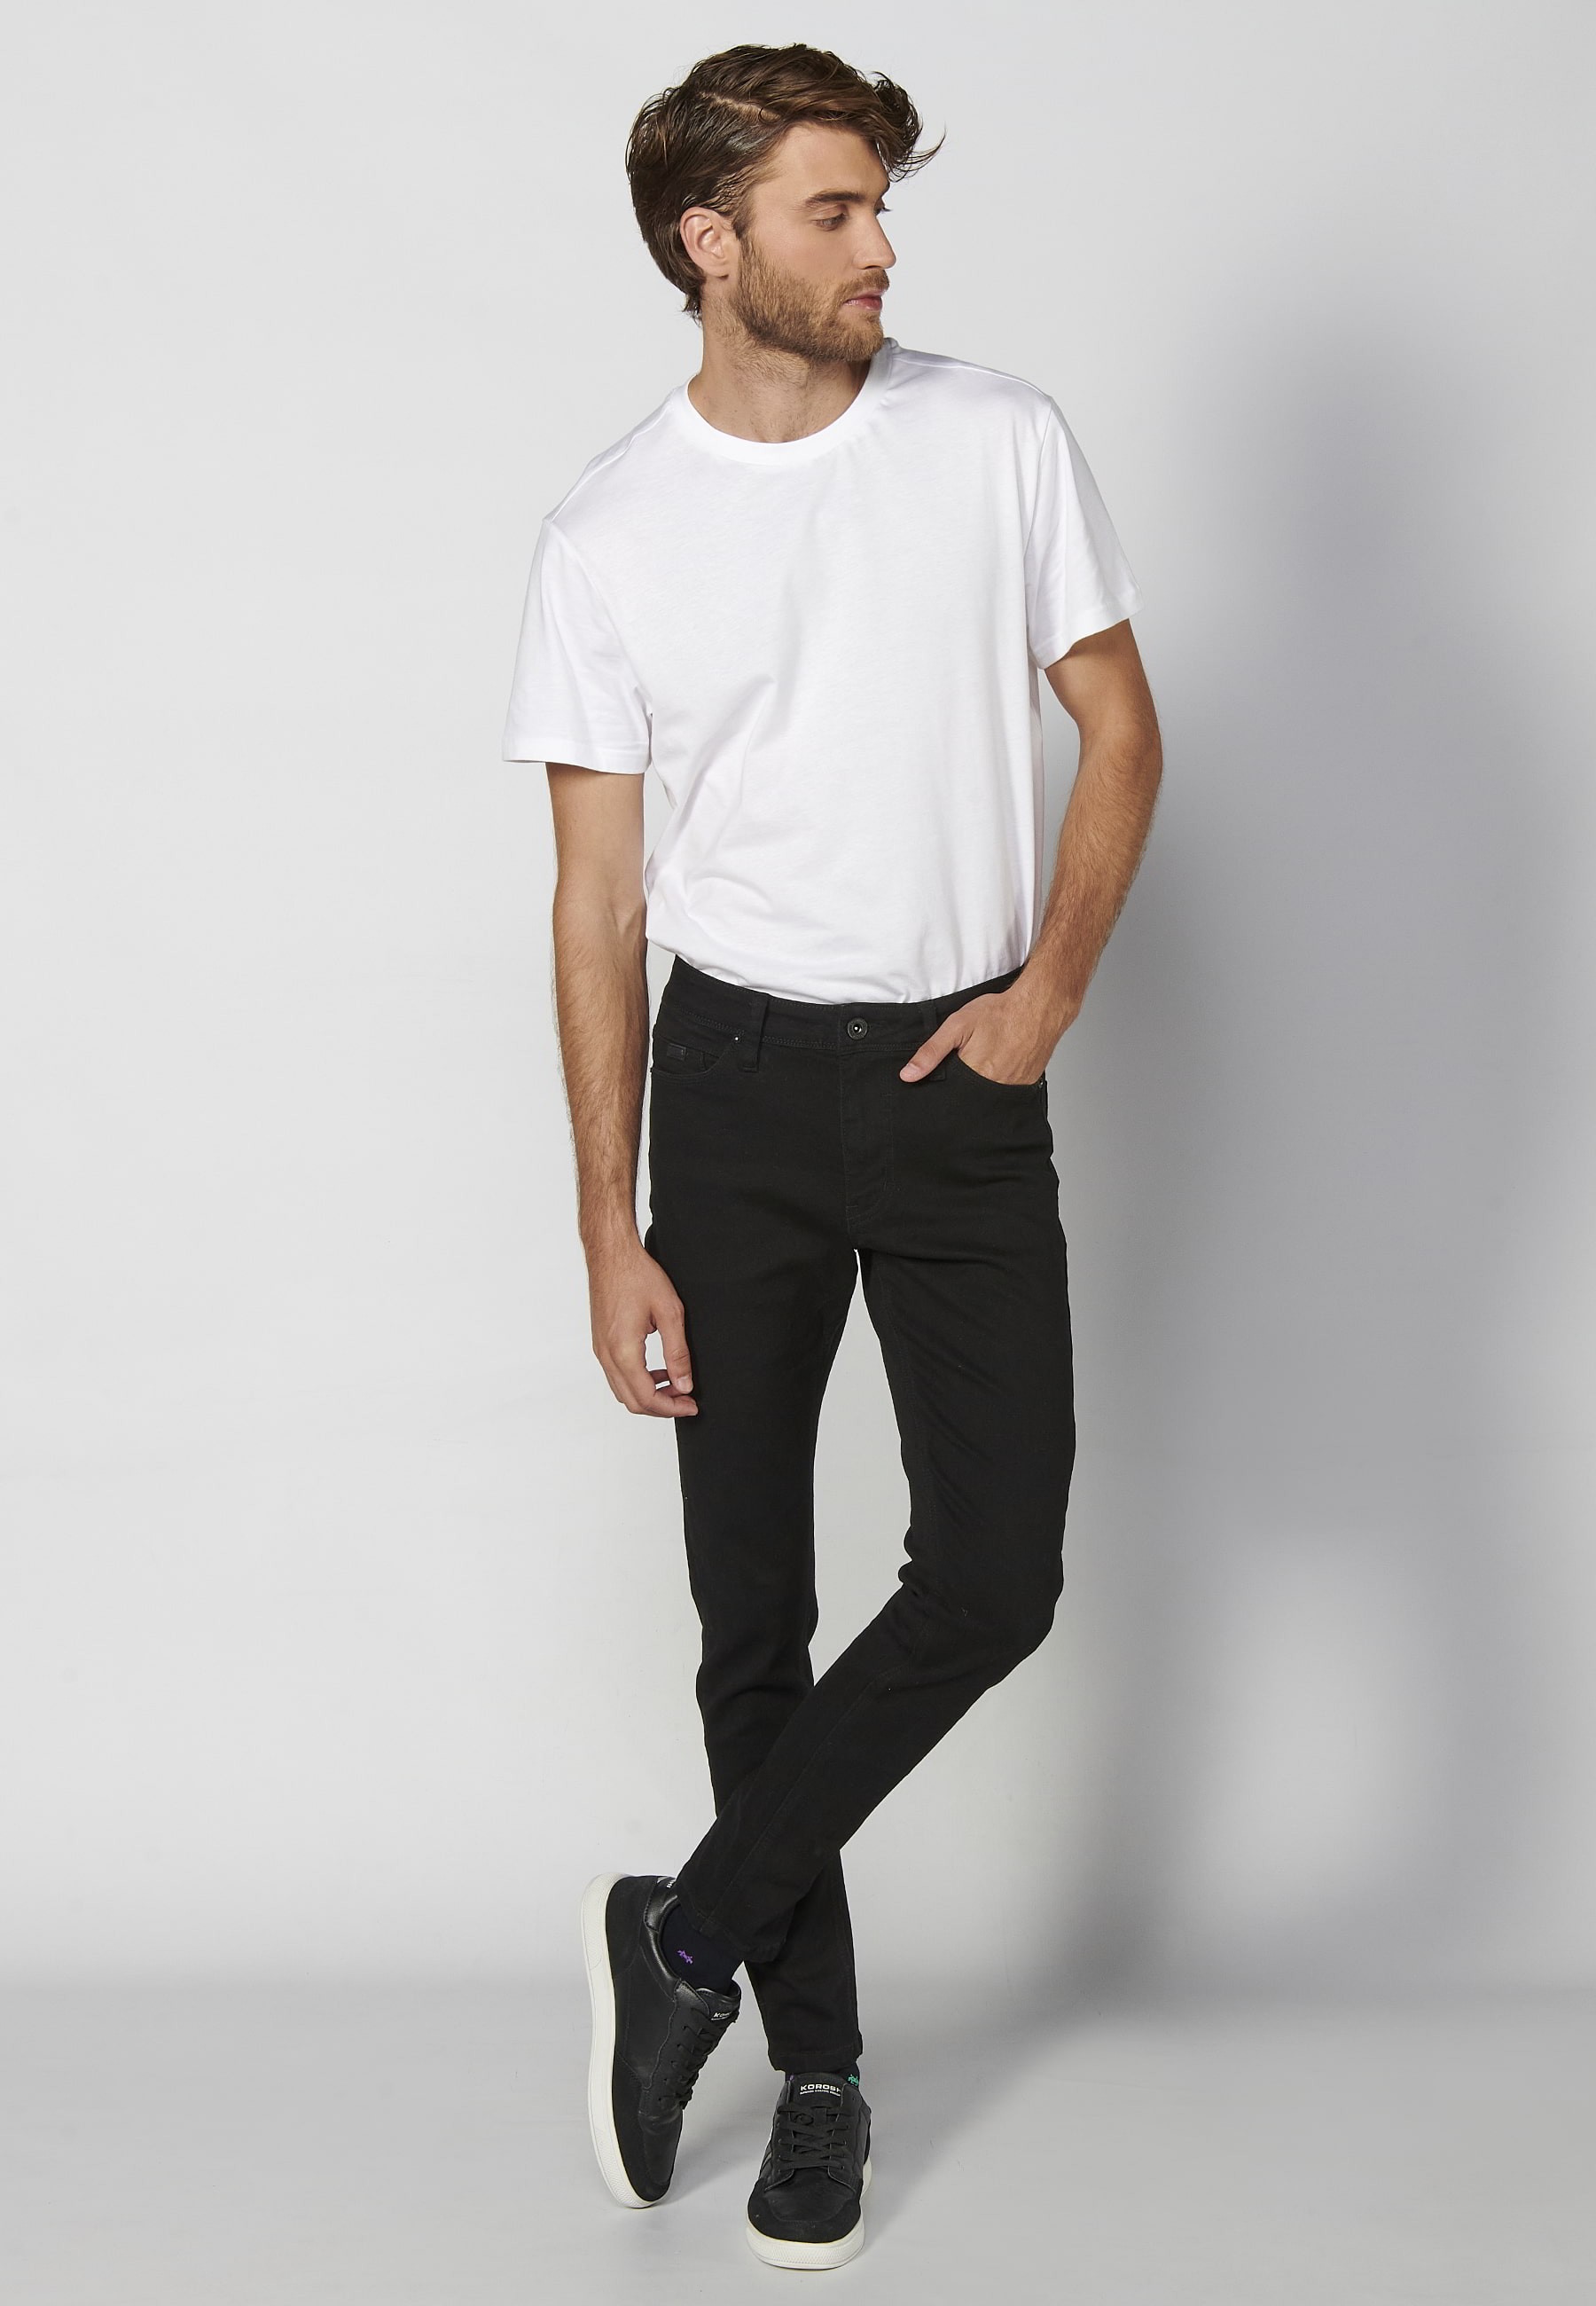 Long super skinny fit jeans with five pockets in Black Denim for Men